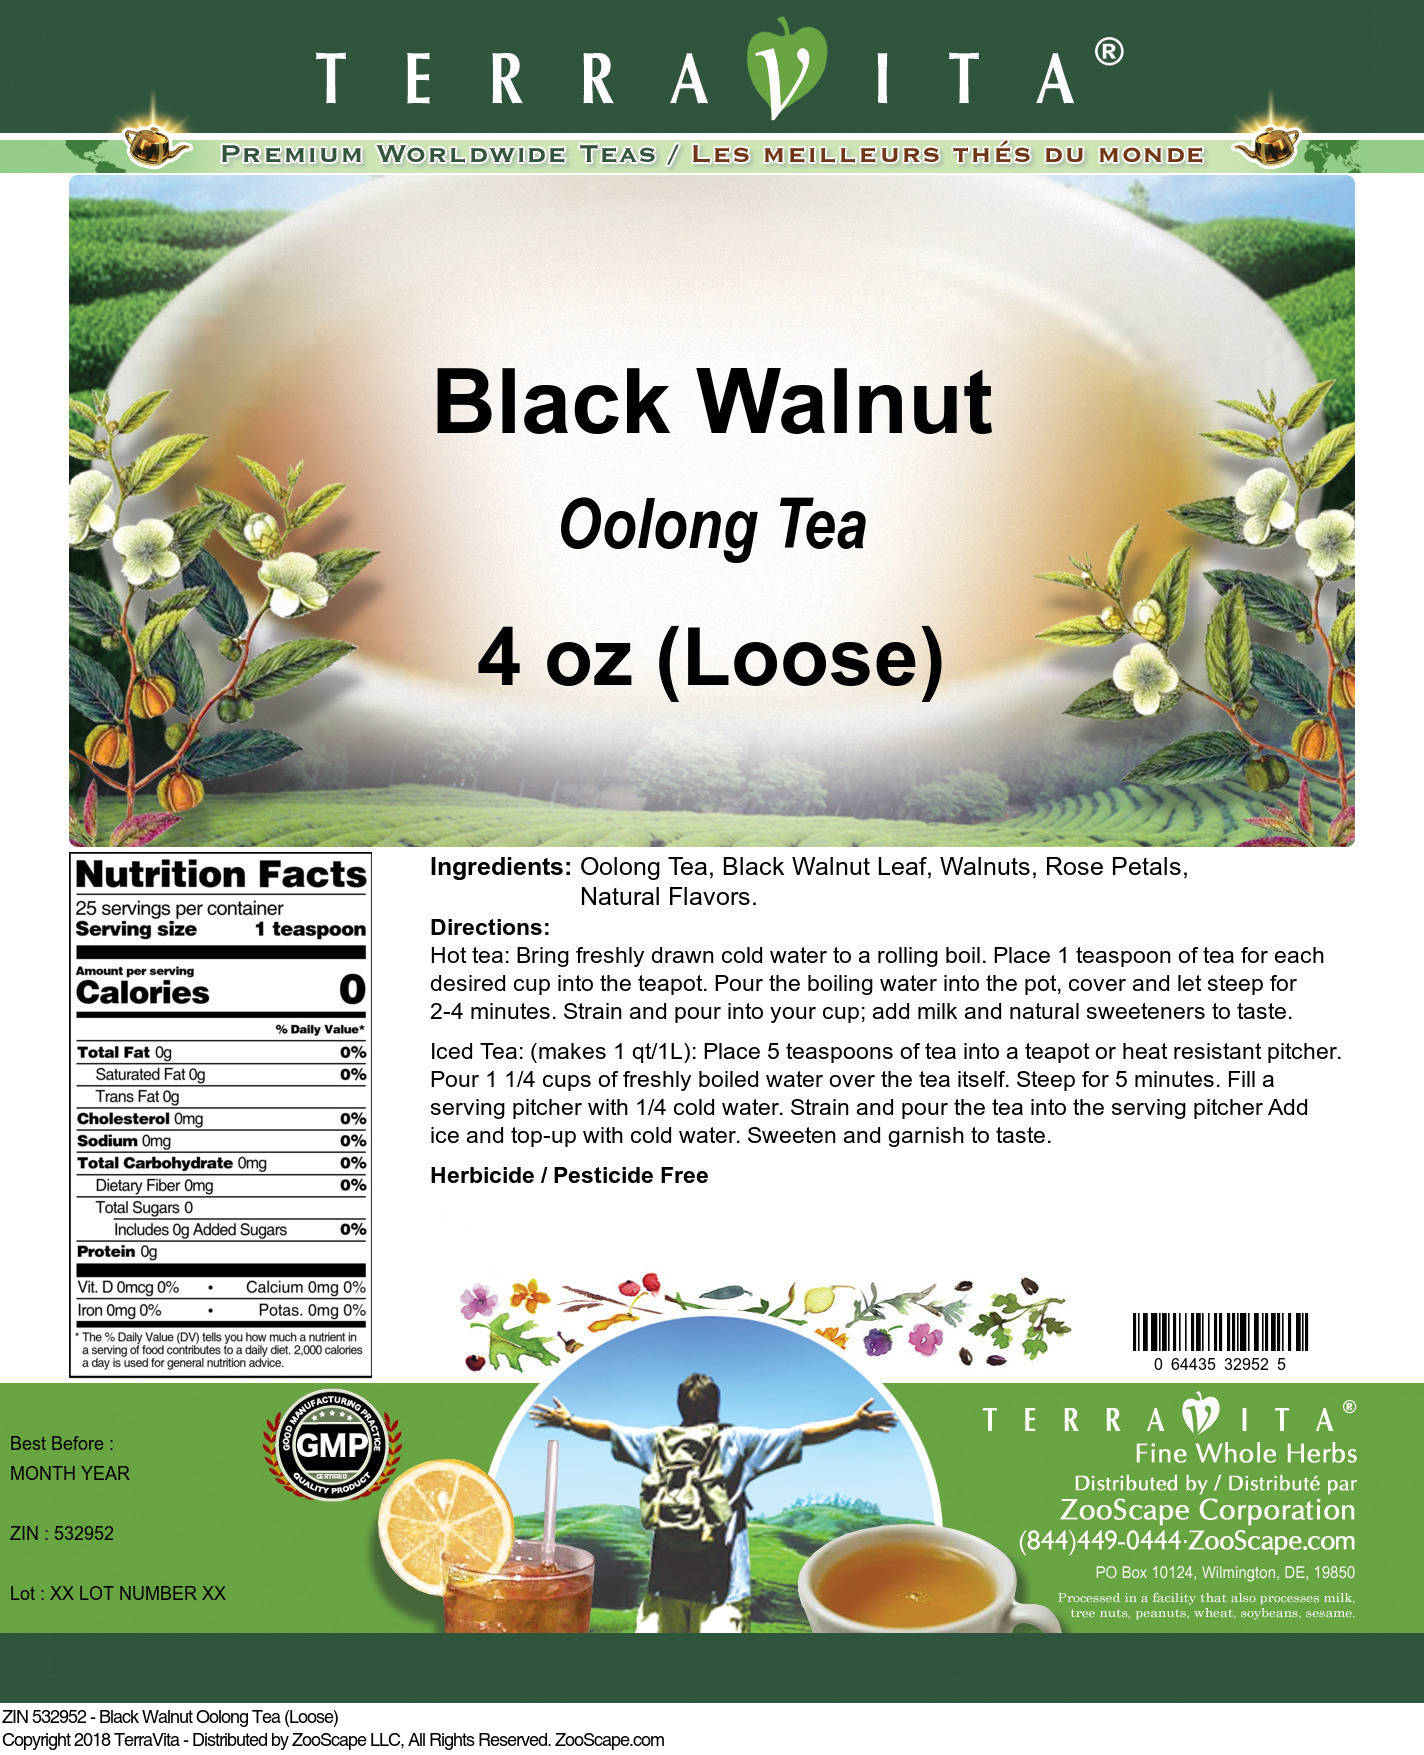 Black Walnut Oolong Tea (Loose) - Label